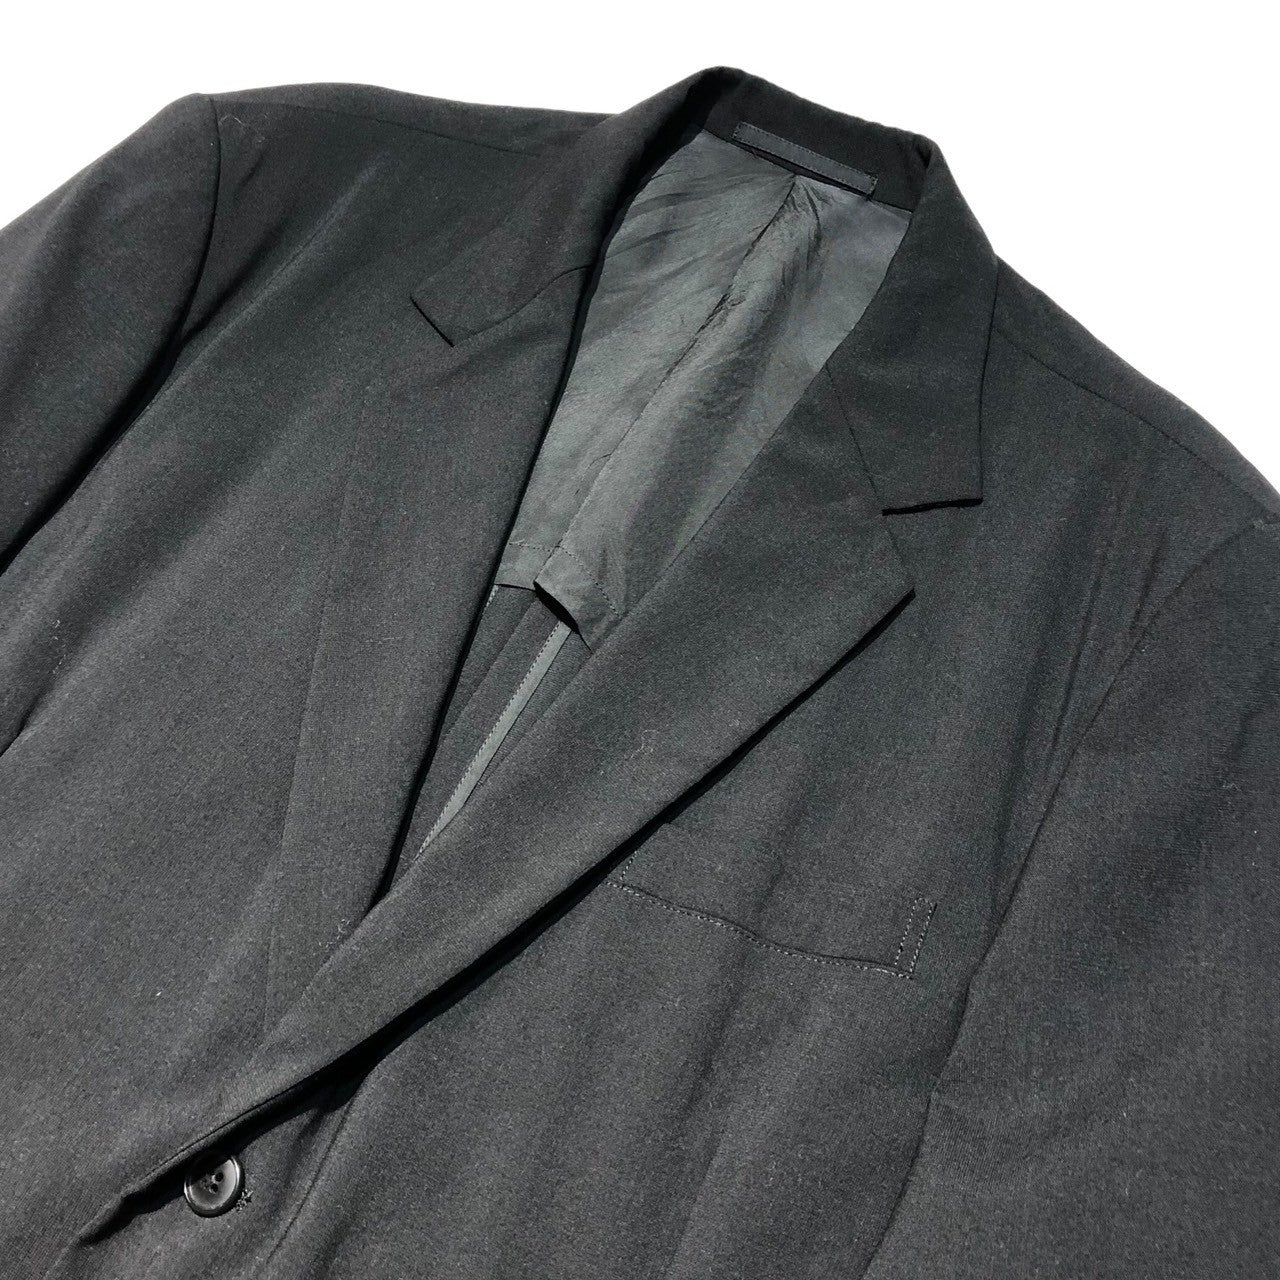 Y's for men(ワイズフォーメン) 93SS wool gabardine set up suit ウール ギャバジン セット アップ スーツ MO-J06-103 MO-P04-103 S ブラック ワイド シルエット パンツ テーラード ジャケット